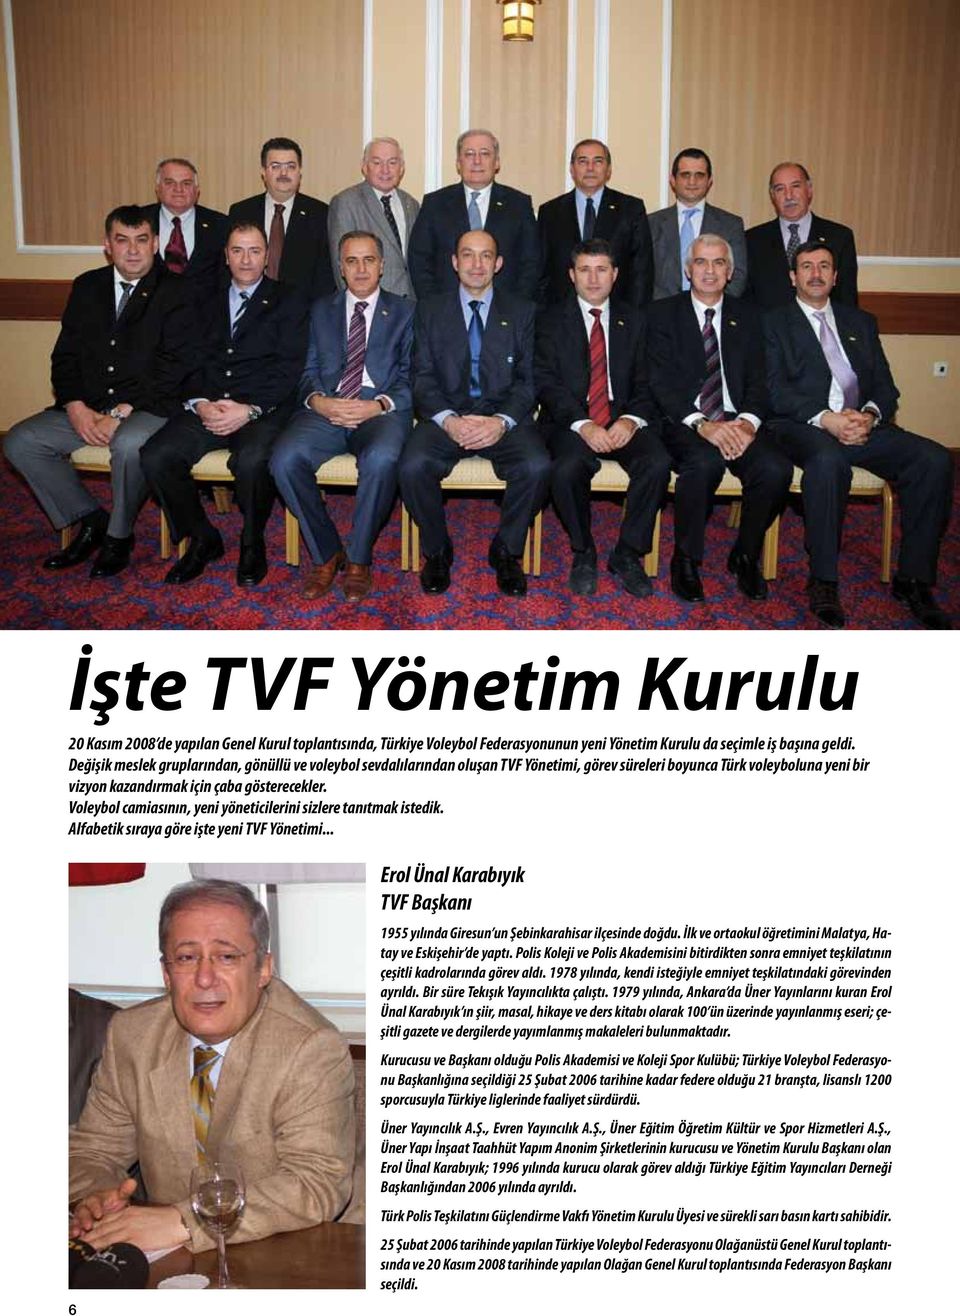 Voleybol camiasının, yeni yöneticilerini sizlere tanıtmak istedik. Alfabetik sıraya göre işte yeni TVF Yönetimi.